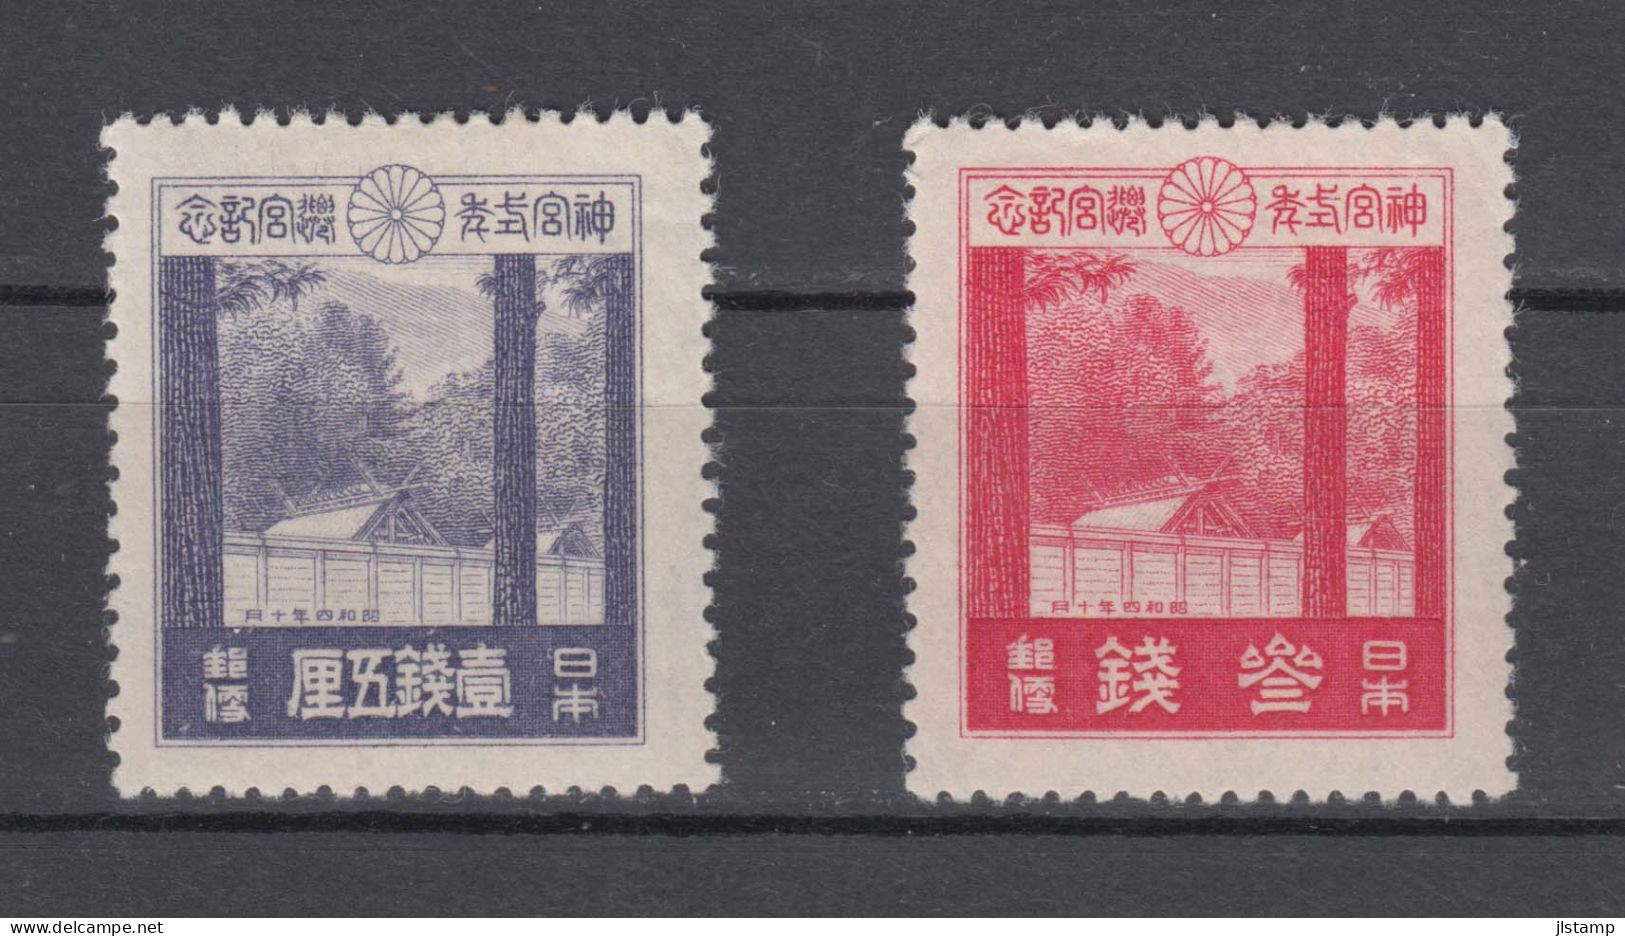 Japan 1929 Ise Shrines Stamps Set Of 2 ,Scott# 206-207,OG MH,VF - Nuevos